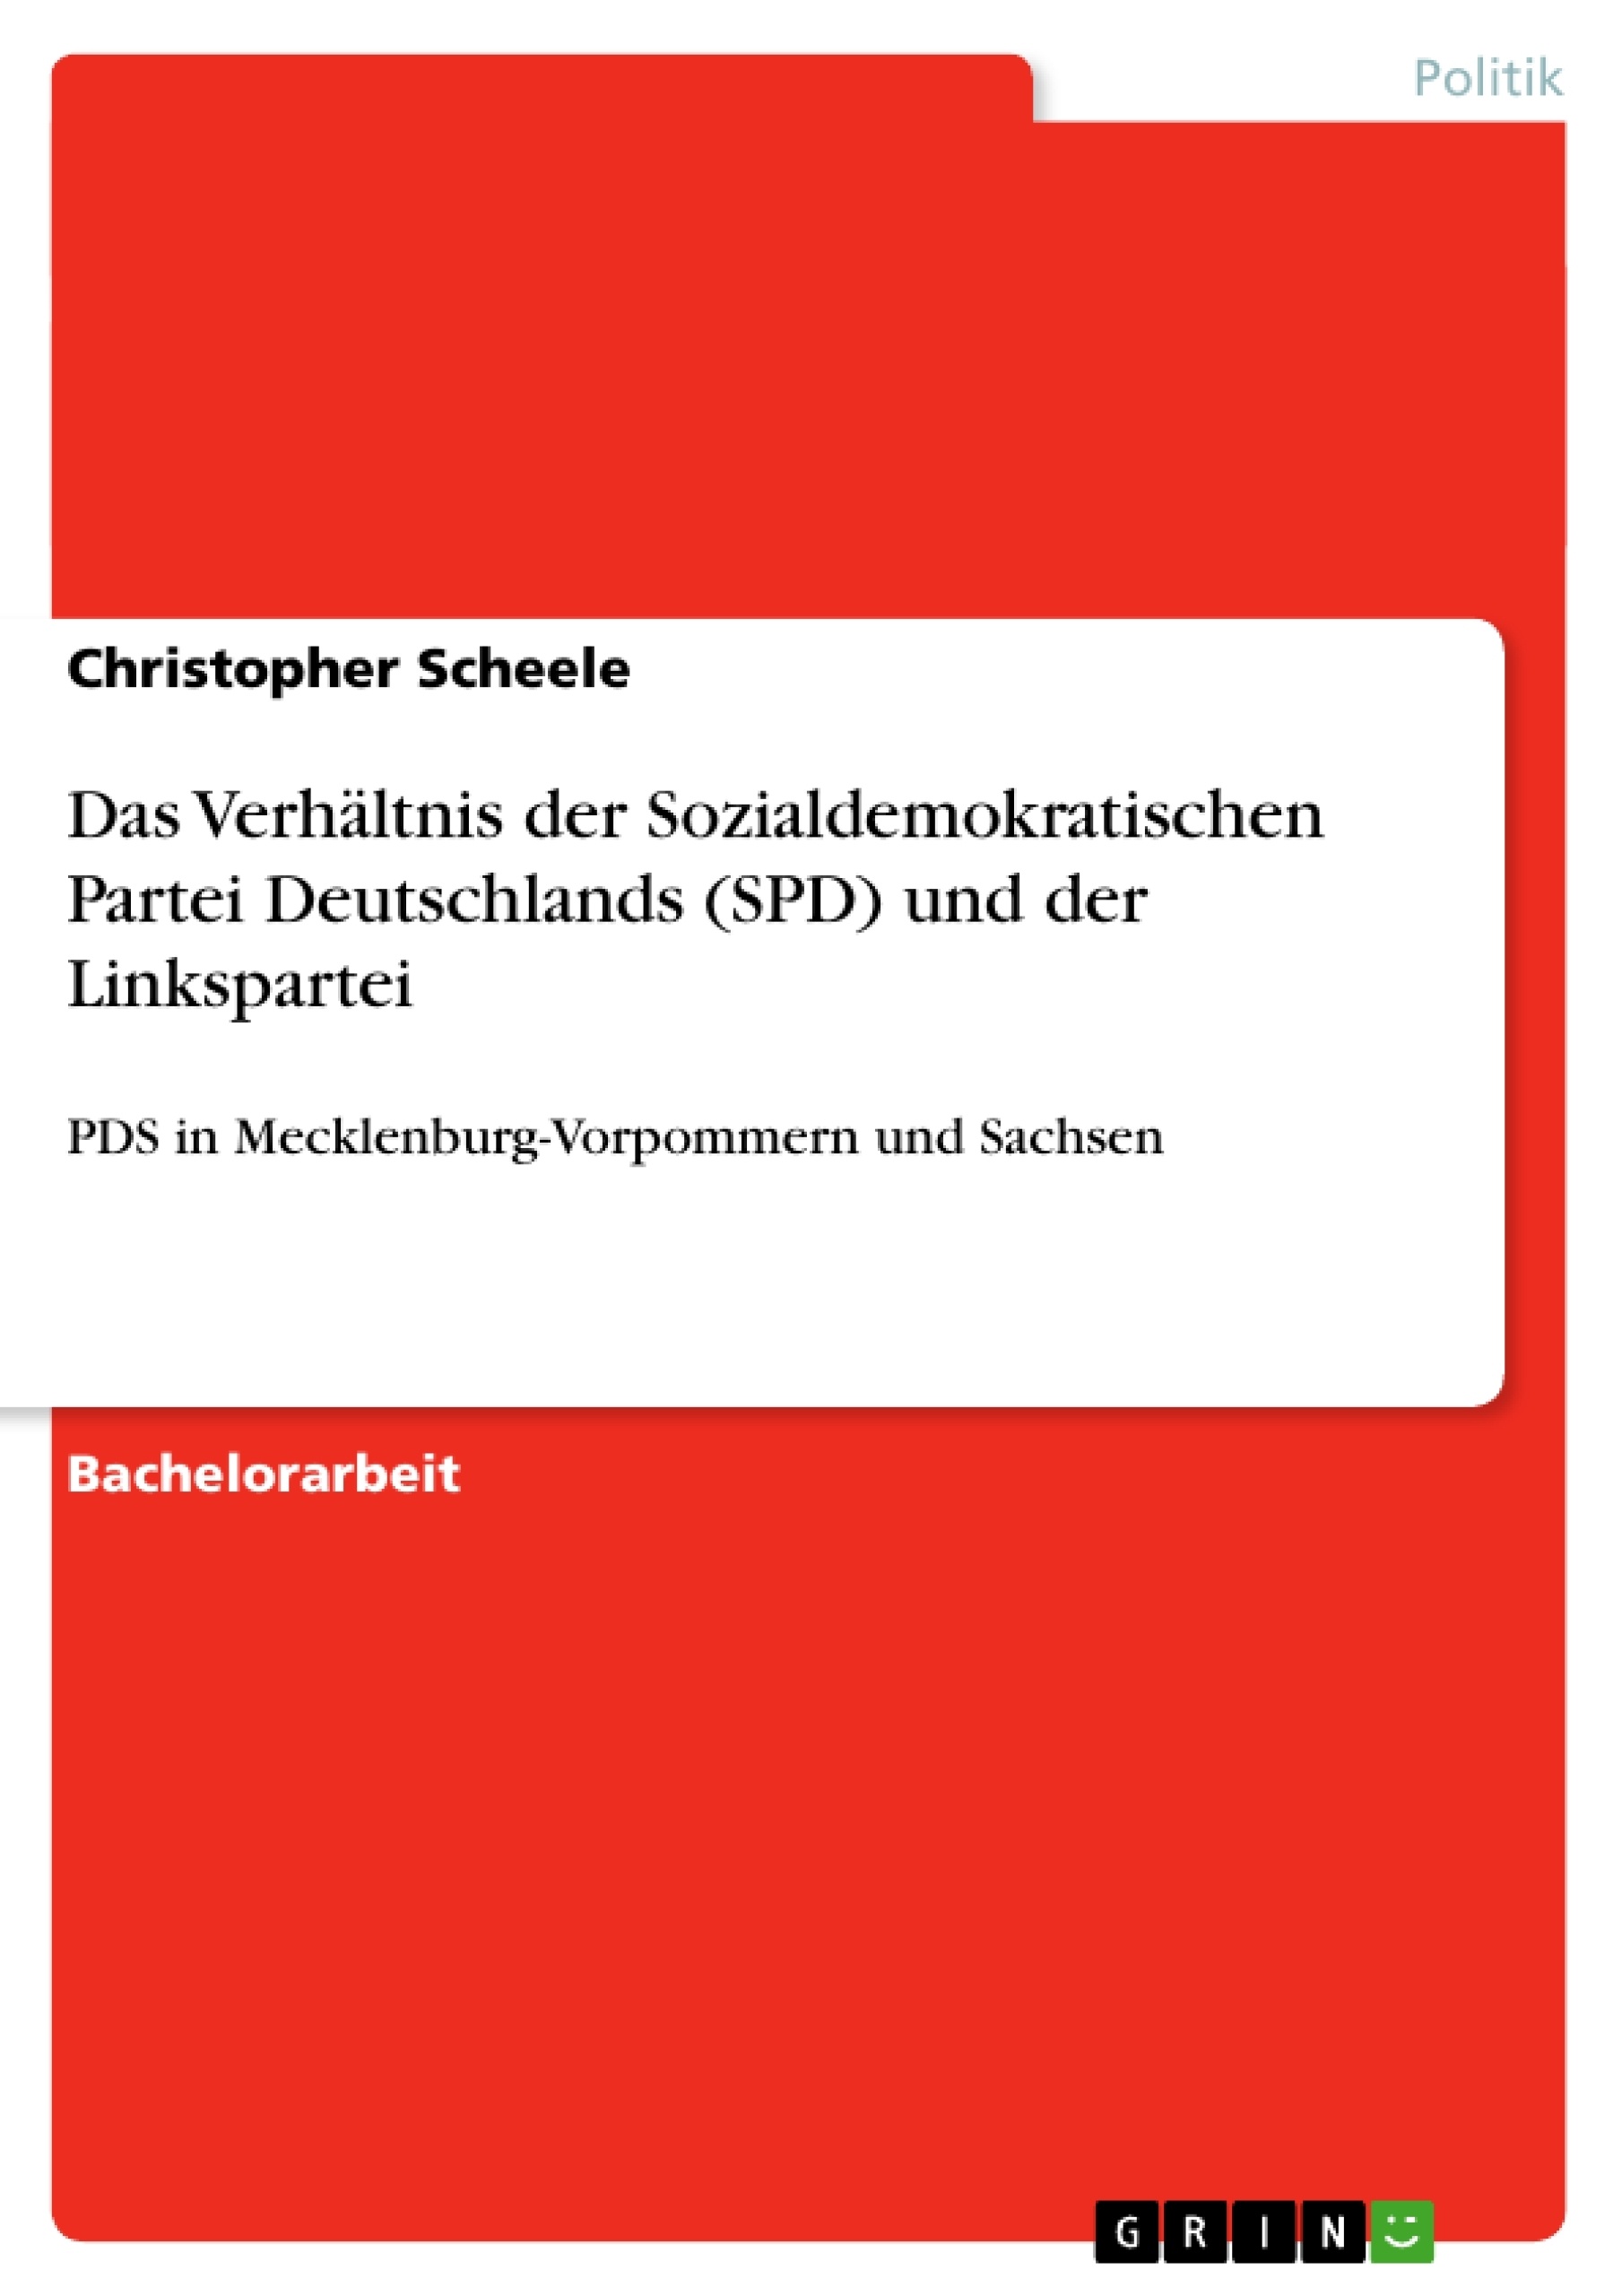 Title: Das Verhältnis der Sozialdemokratischen Partei Deutschlands (SPD) und der Linkspartei